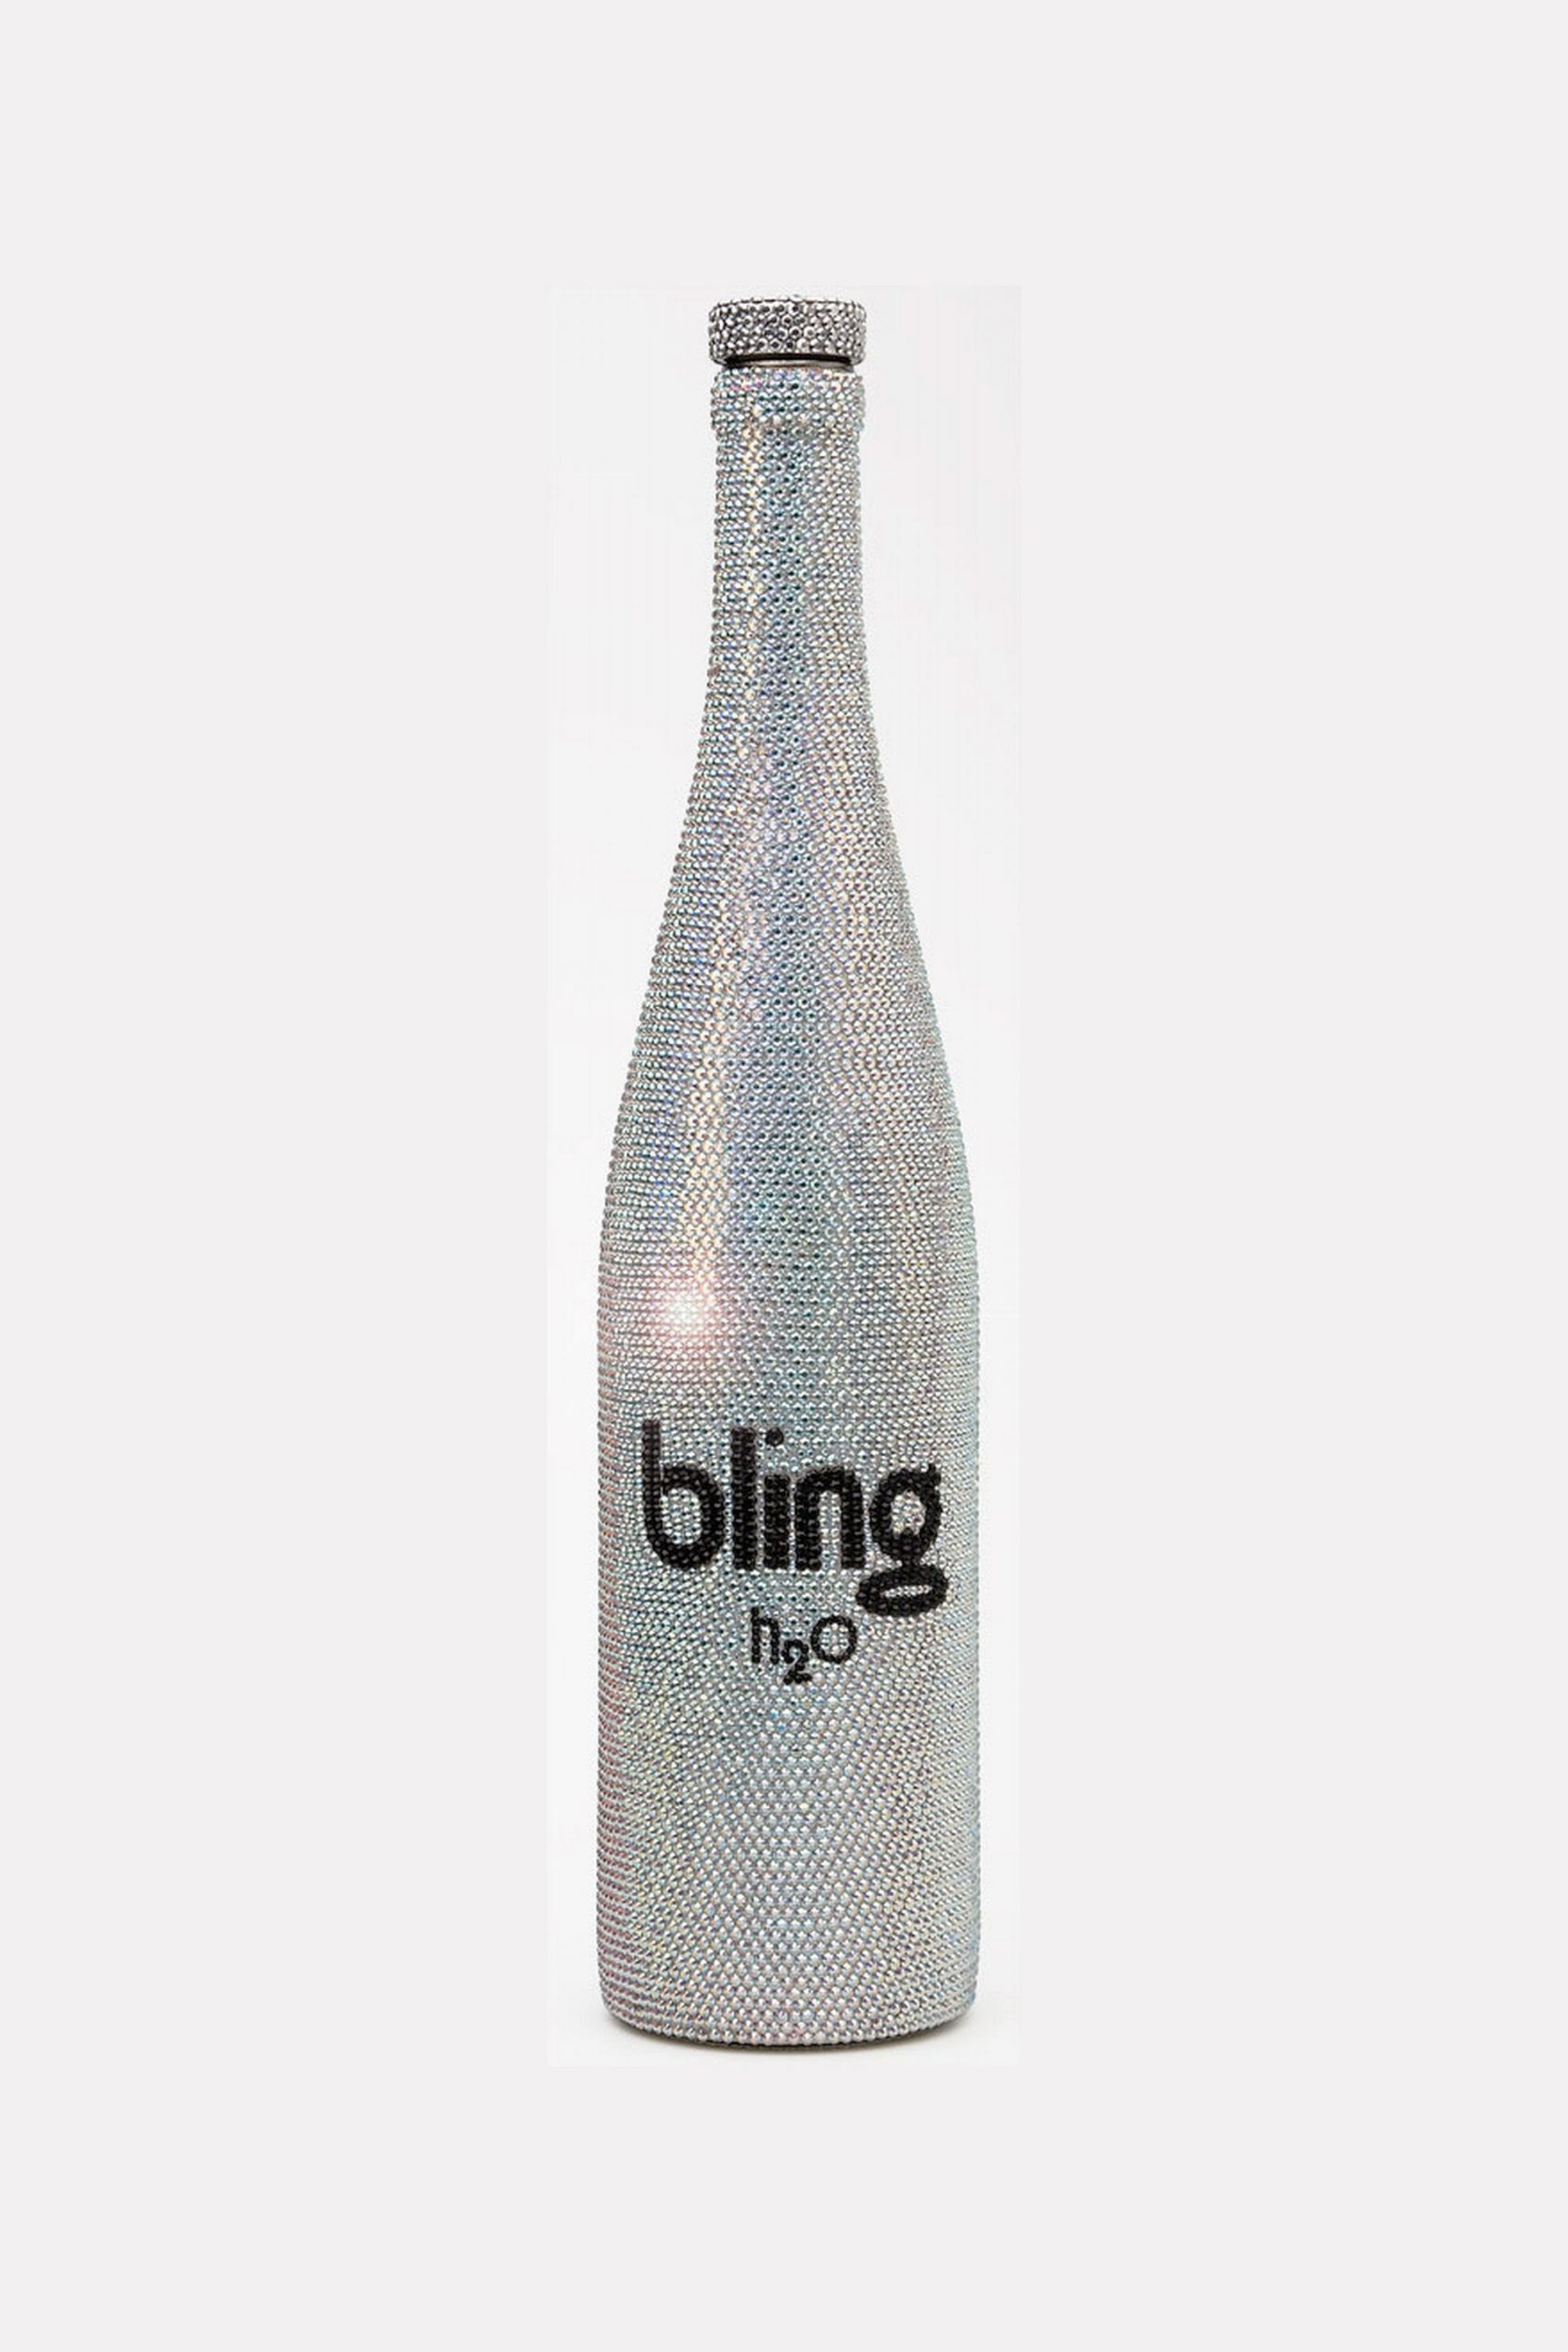 En la imagen, la botella The Ten Thousand de The Bling H2O. /Foto: Cortesía de la marca.